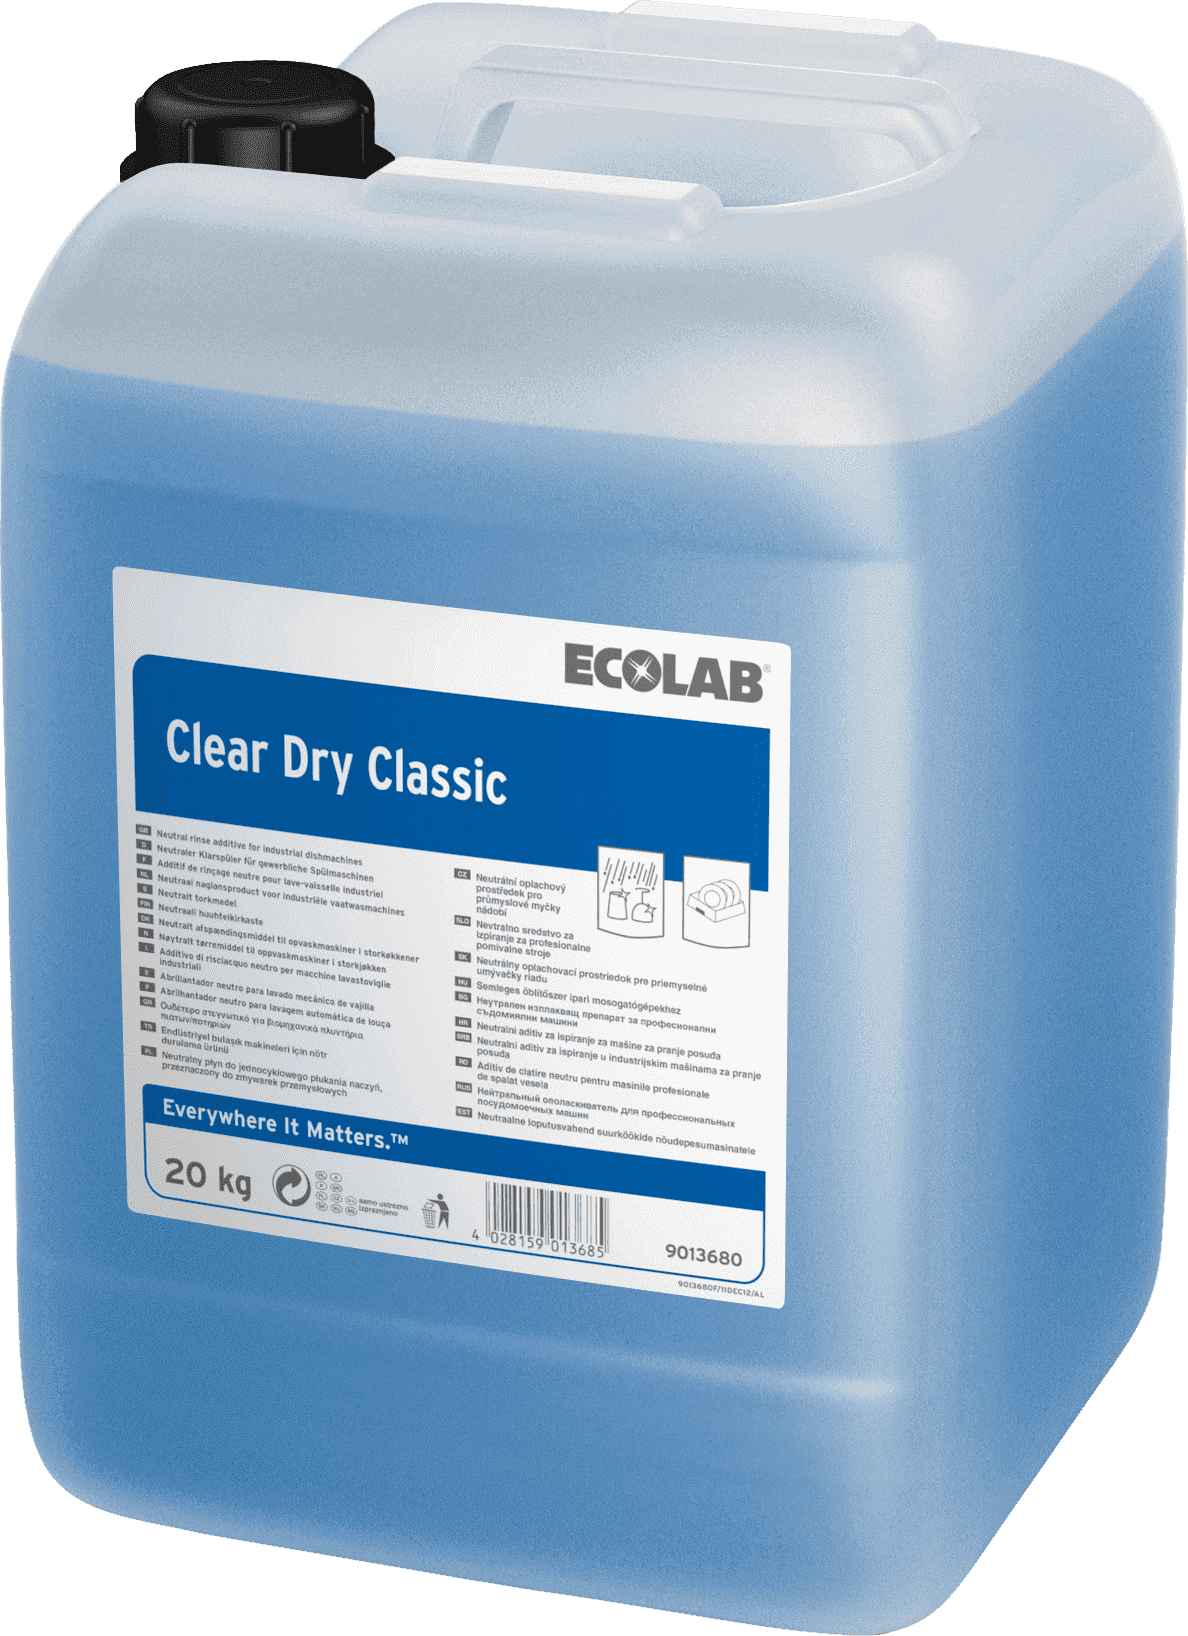 Ecolab Clear Dry Classic средство для ополаскивания посуды в посудомоечной машине